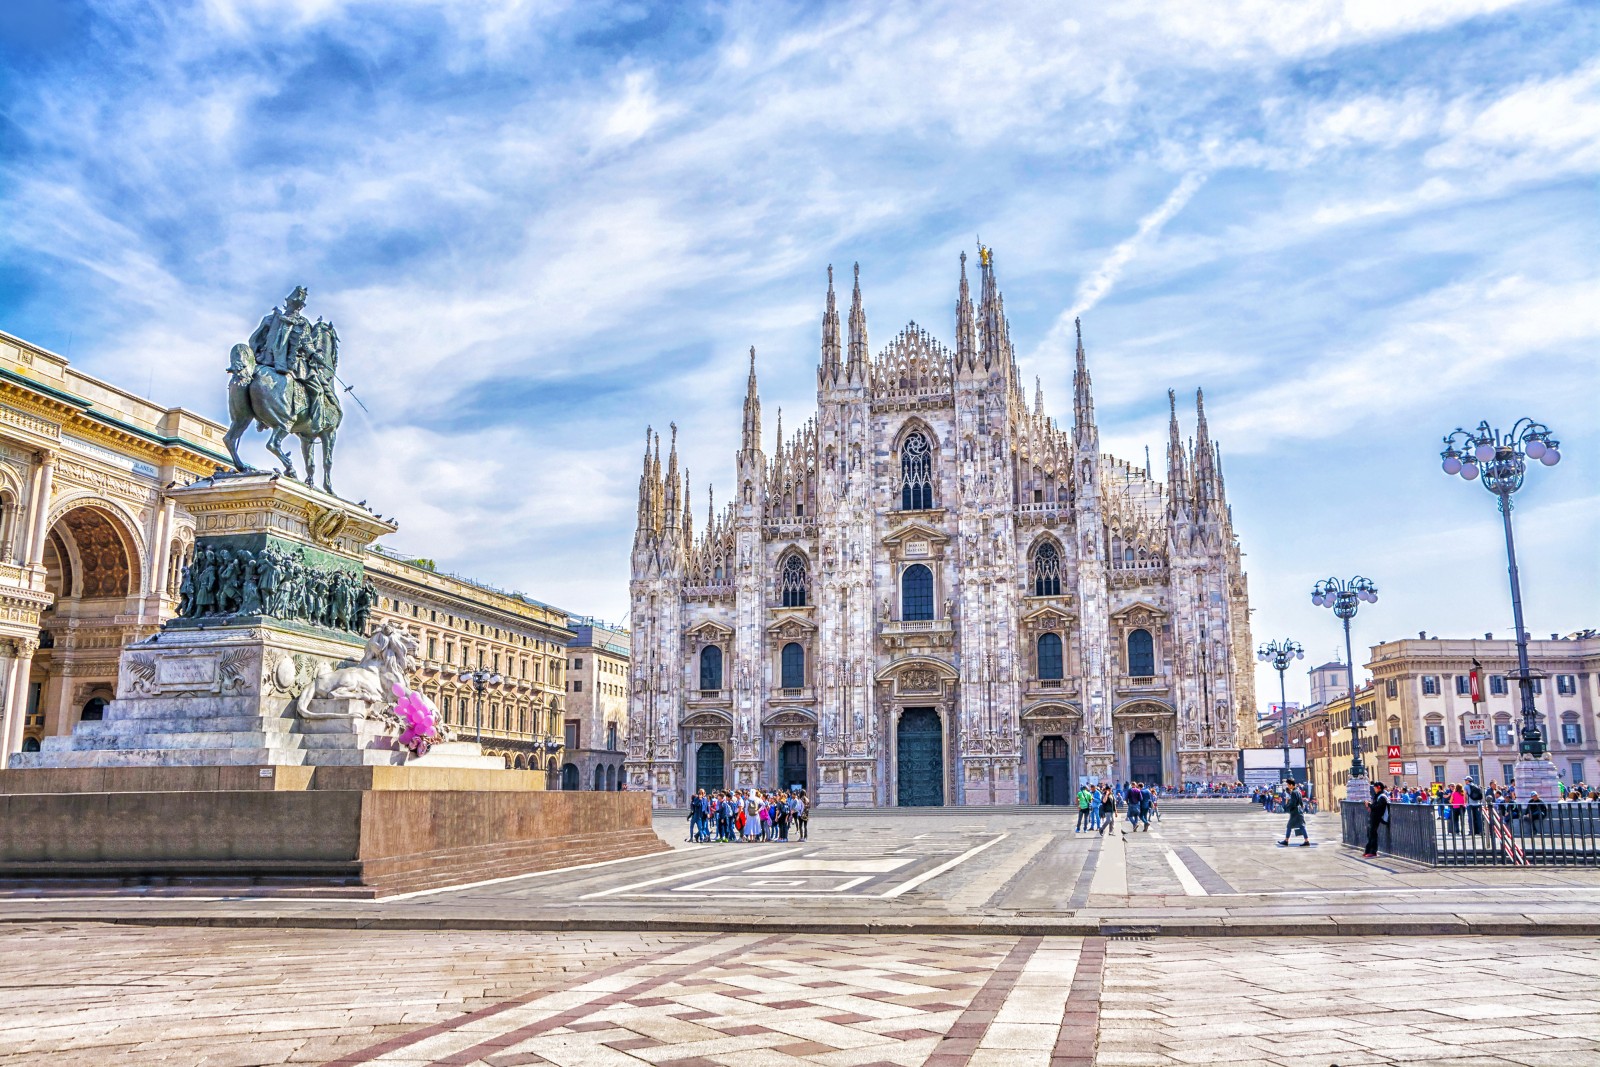 Duomo di Milano: biglietti, orari e informazioni utili per la visita - Lombardia.info